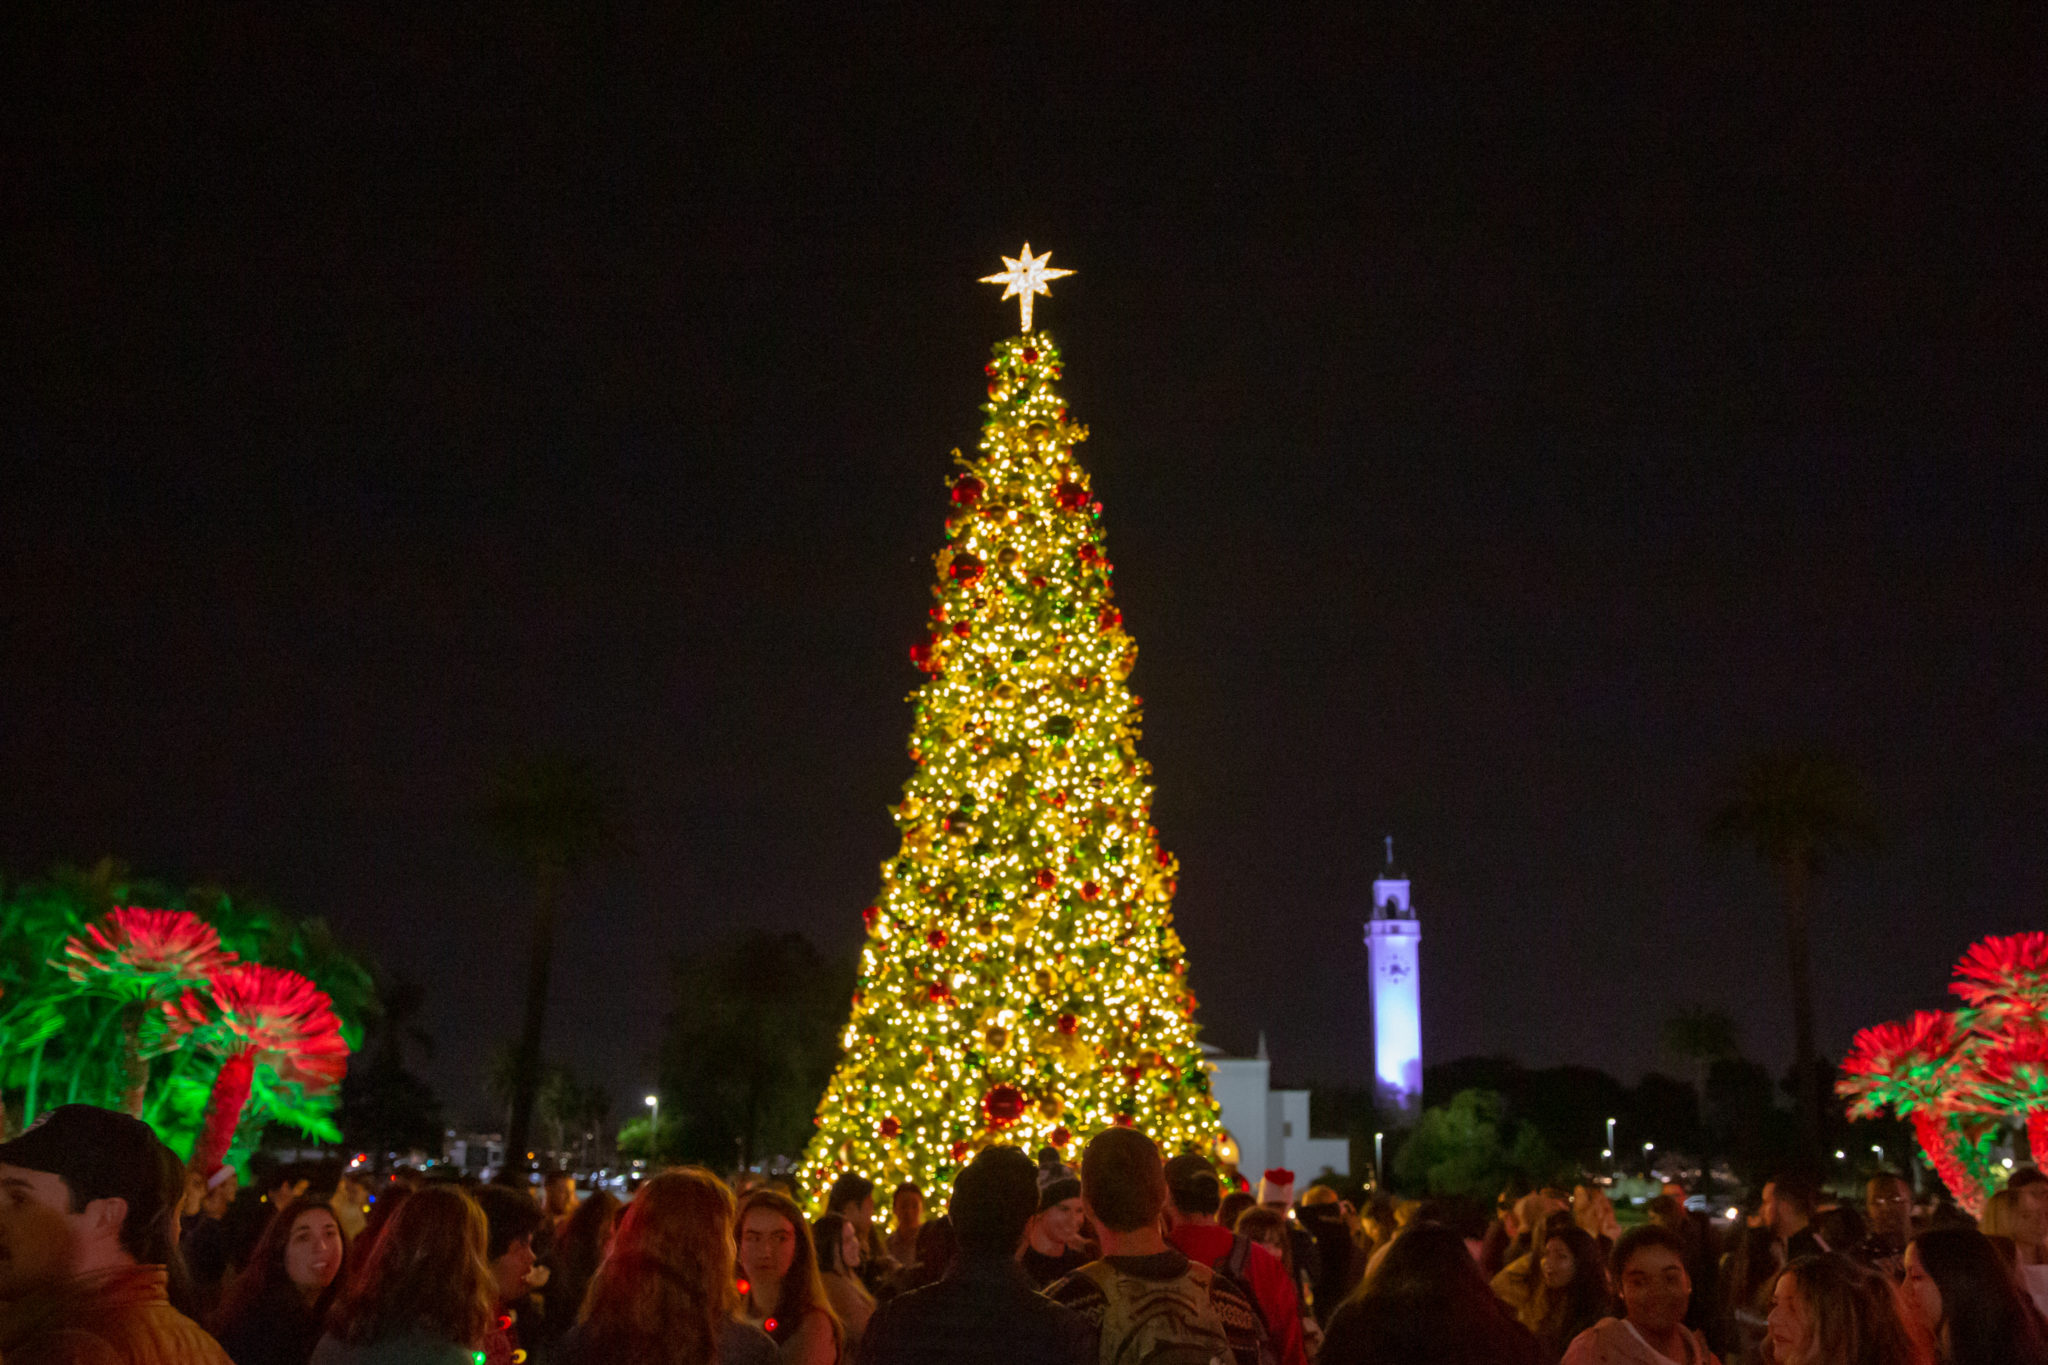 ASLMU Christmas Tree Lighting Tradition Brings LMU, Neighbors Together